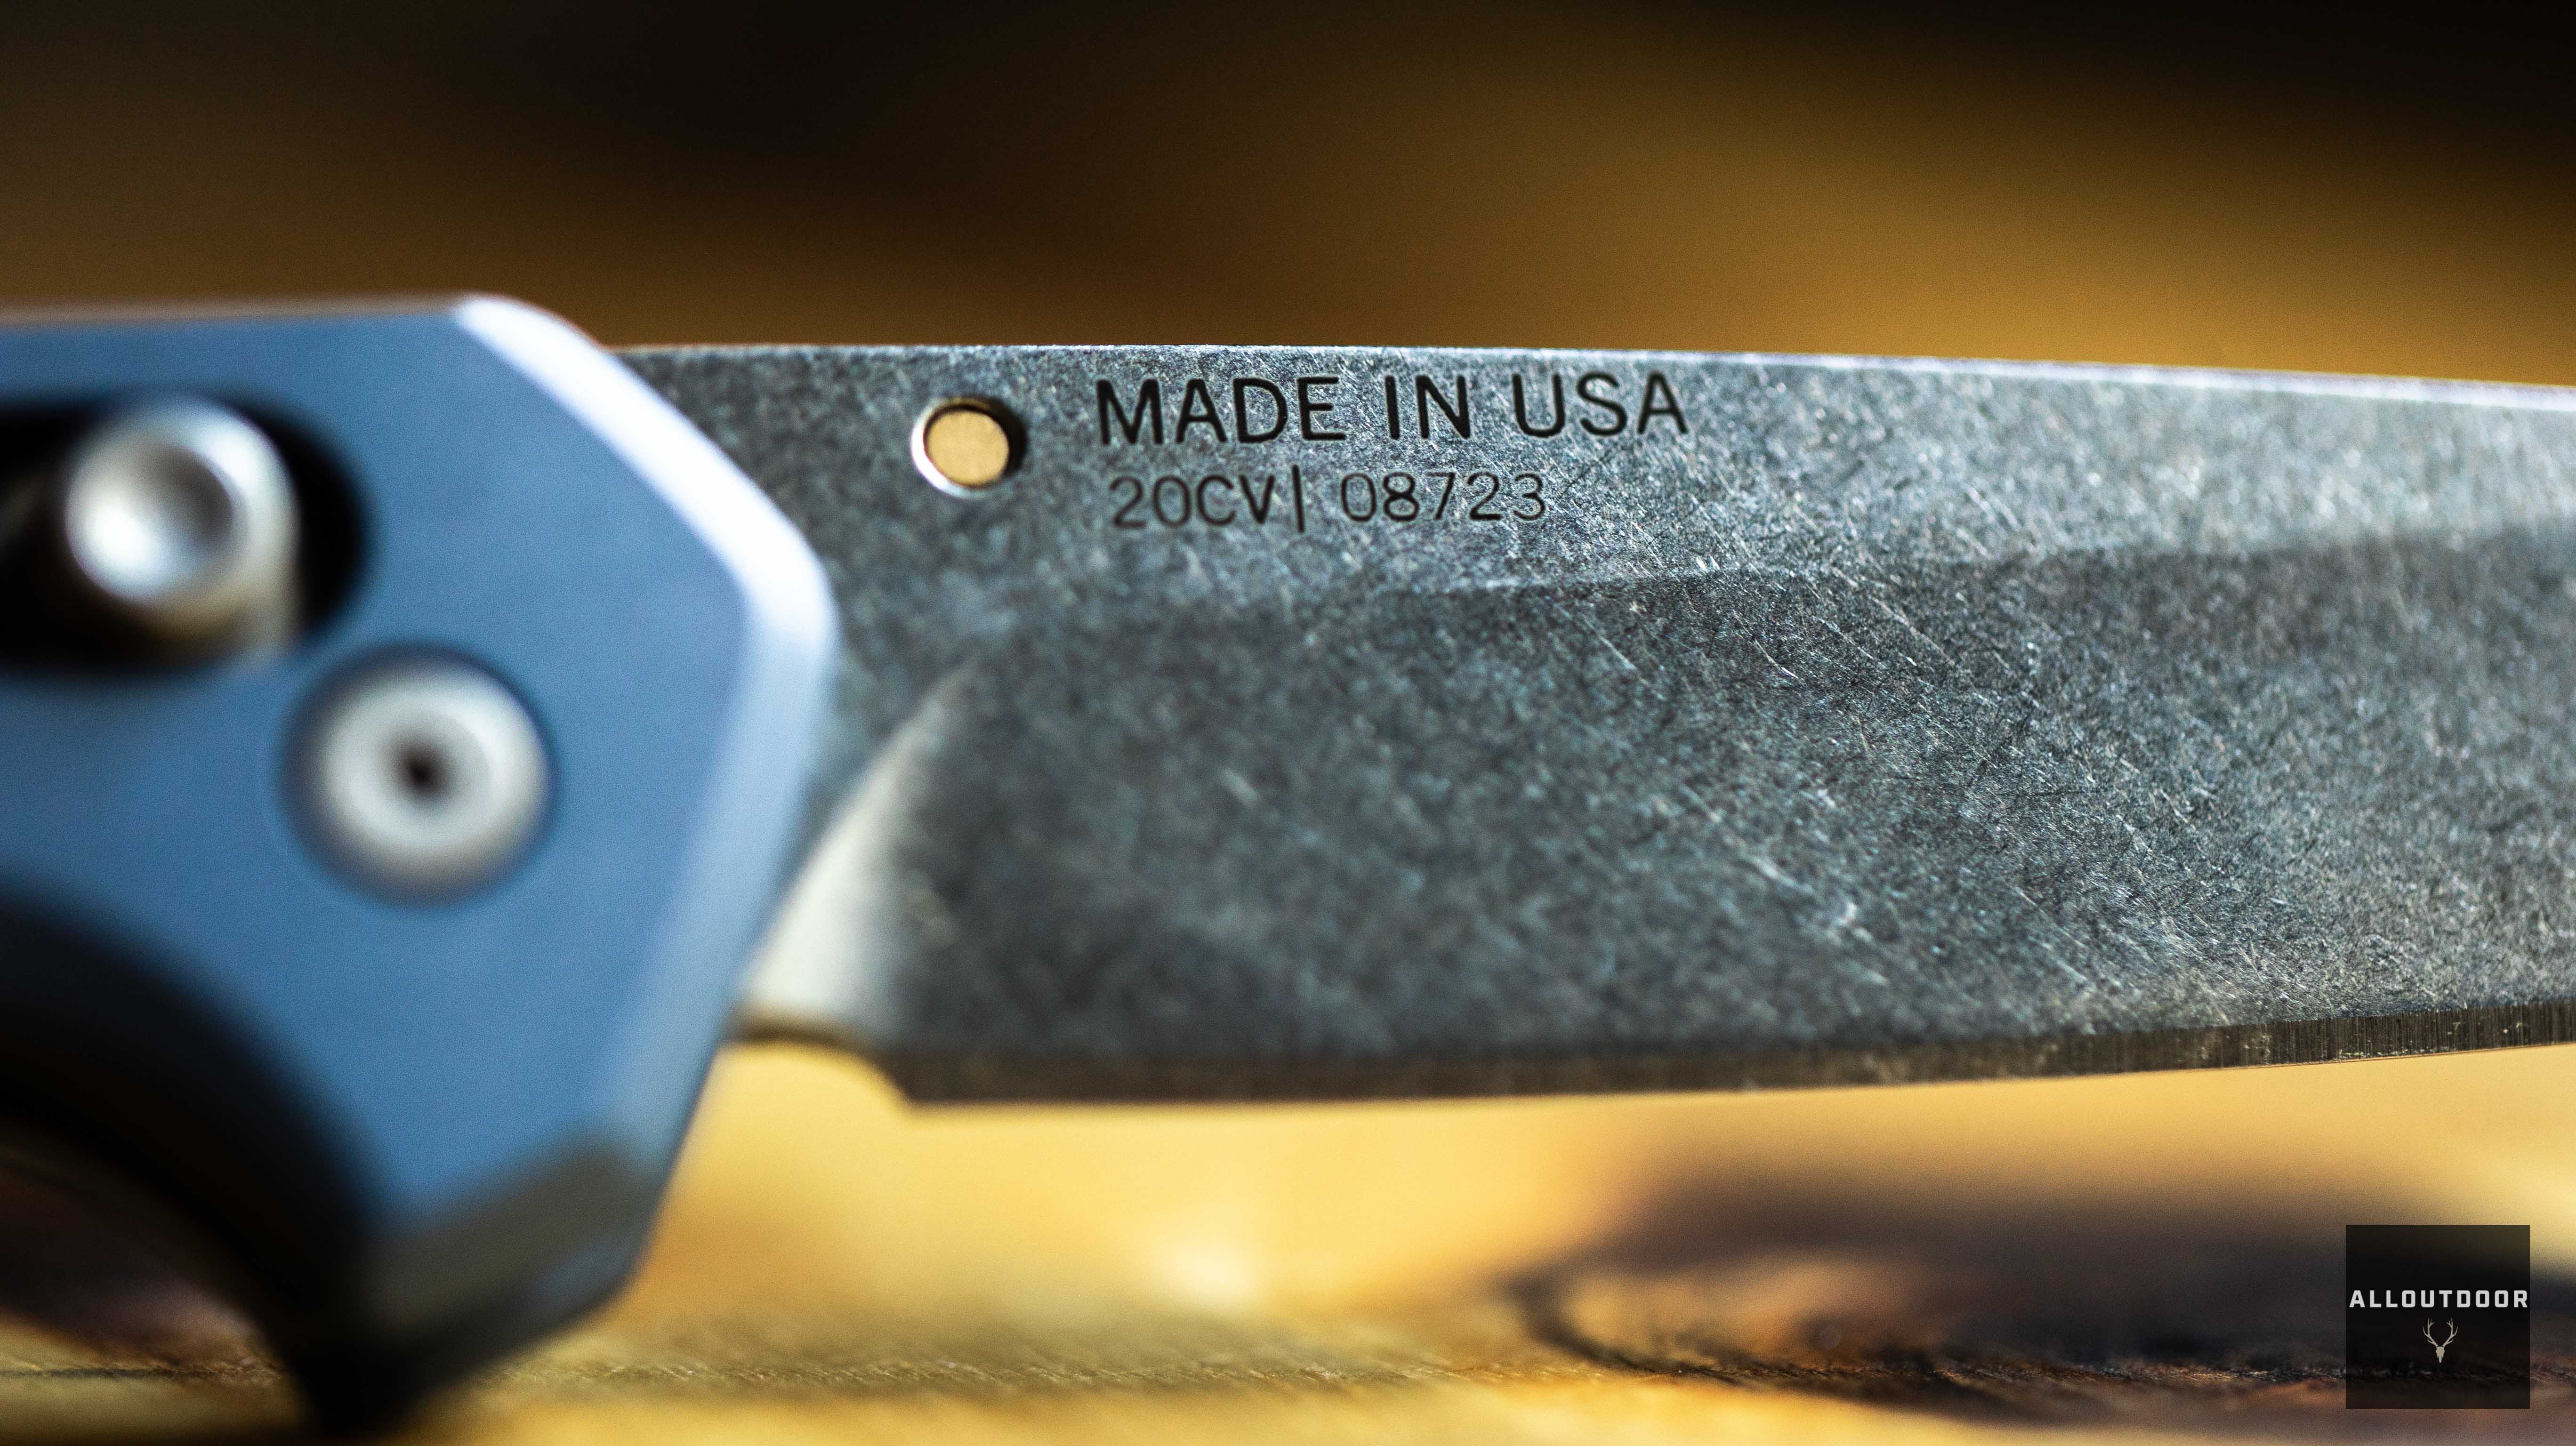 AO Review: Gerber Savvy Folding Knife - 940 Osborne Competitor?...